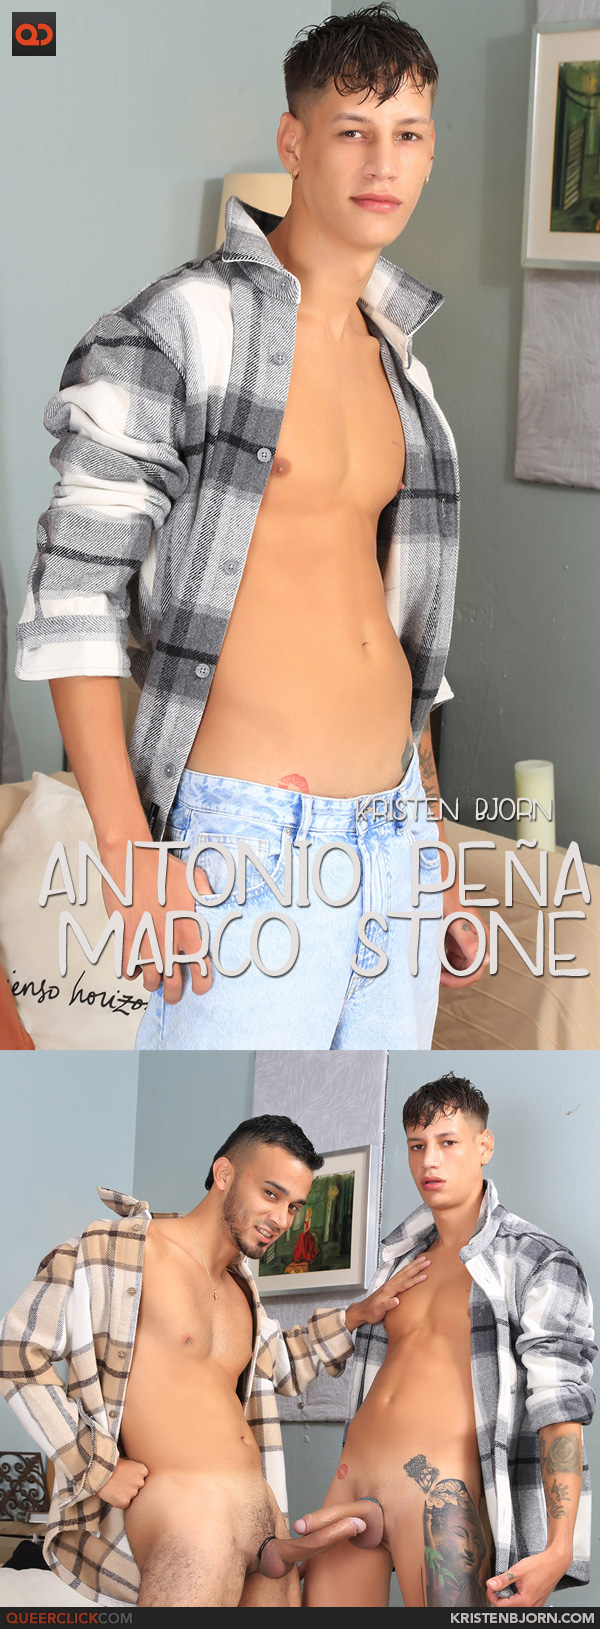 Kristen Bjorn Antonio Peña and Marco Stone -Casting Couch #480 photo